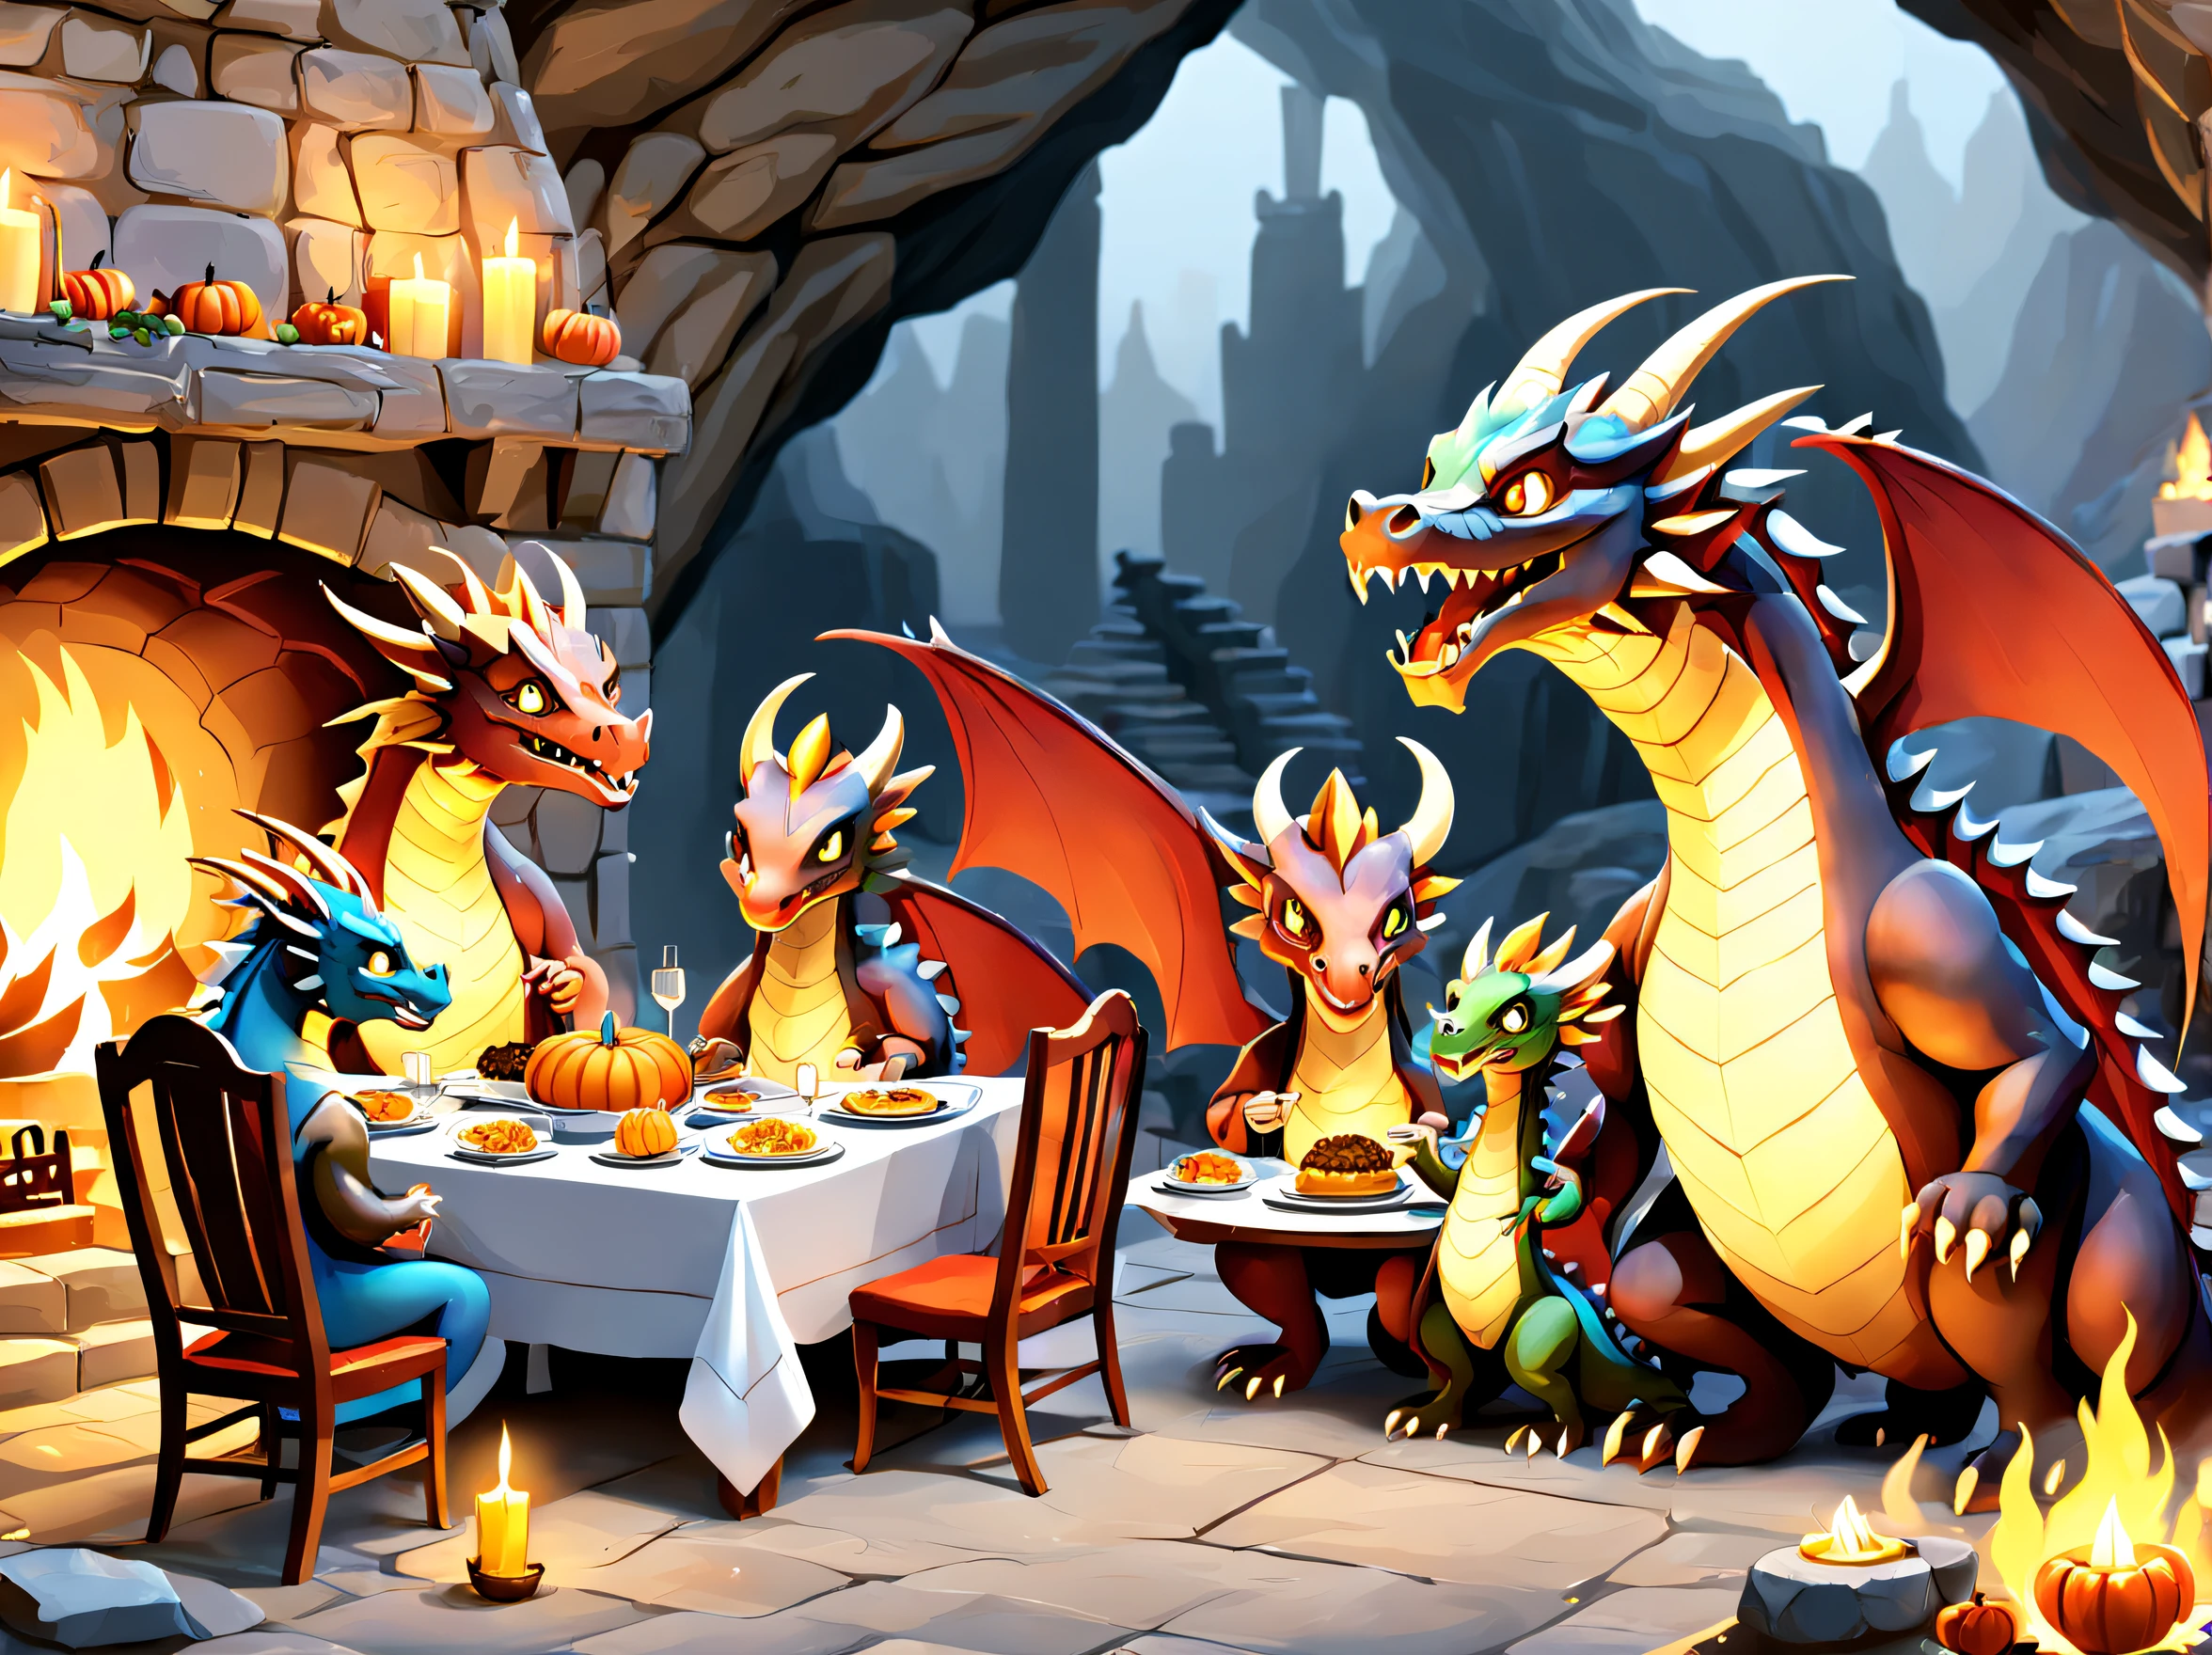 一个拟人化的龙家族在一个大洞穴住宅壁炉前享用感恩节晚餐.